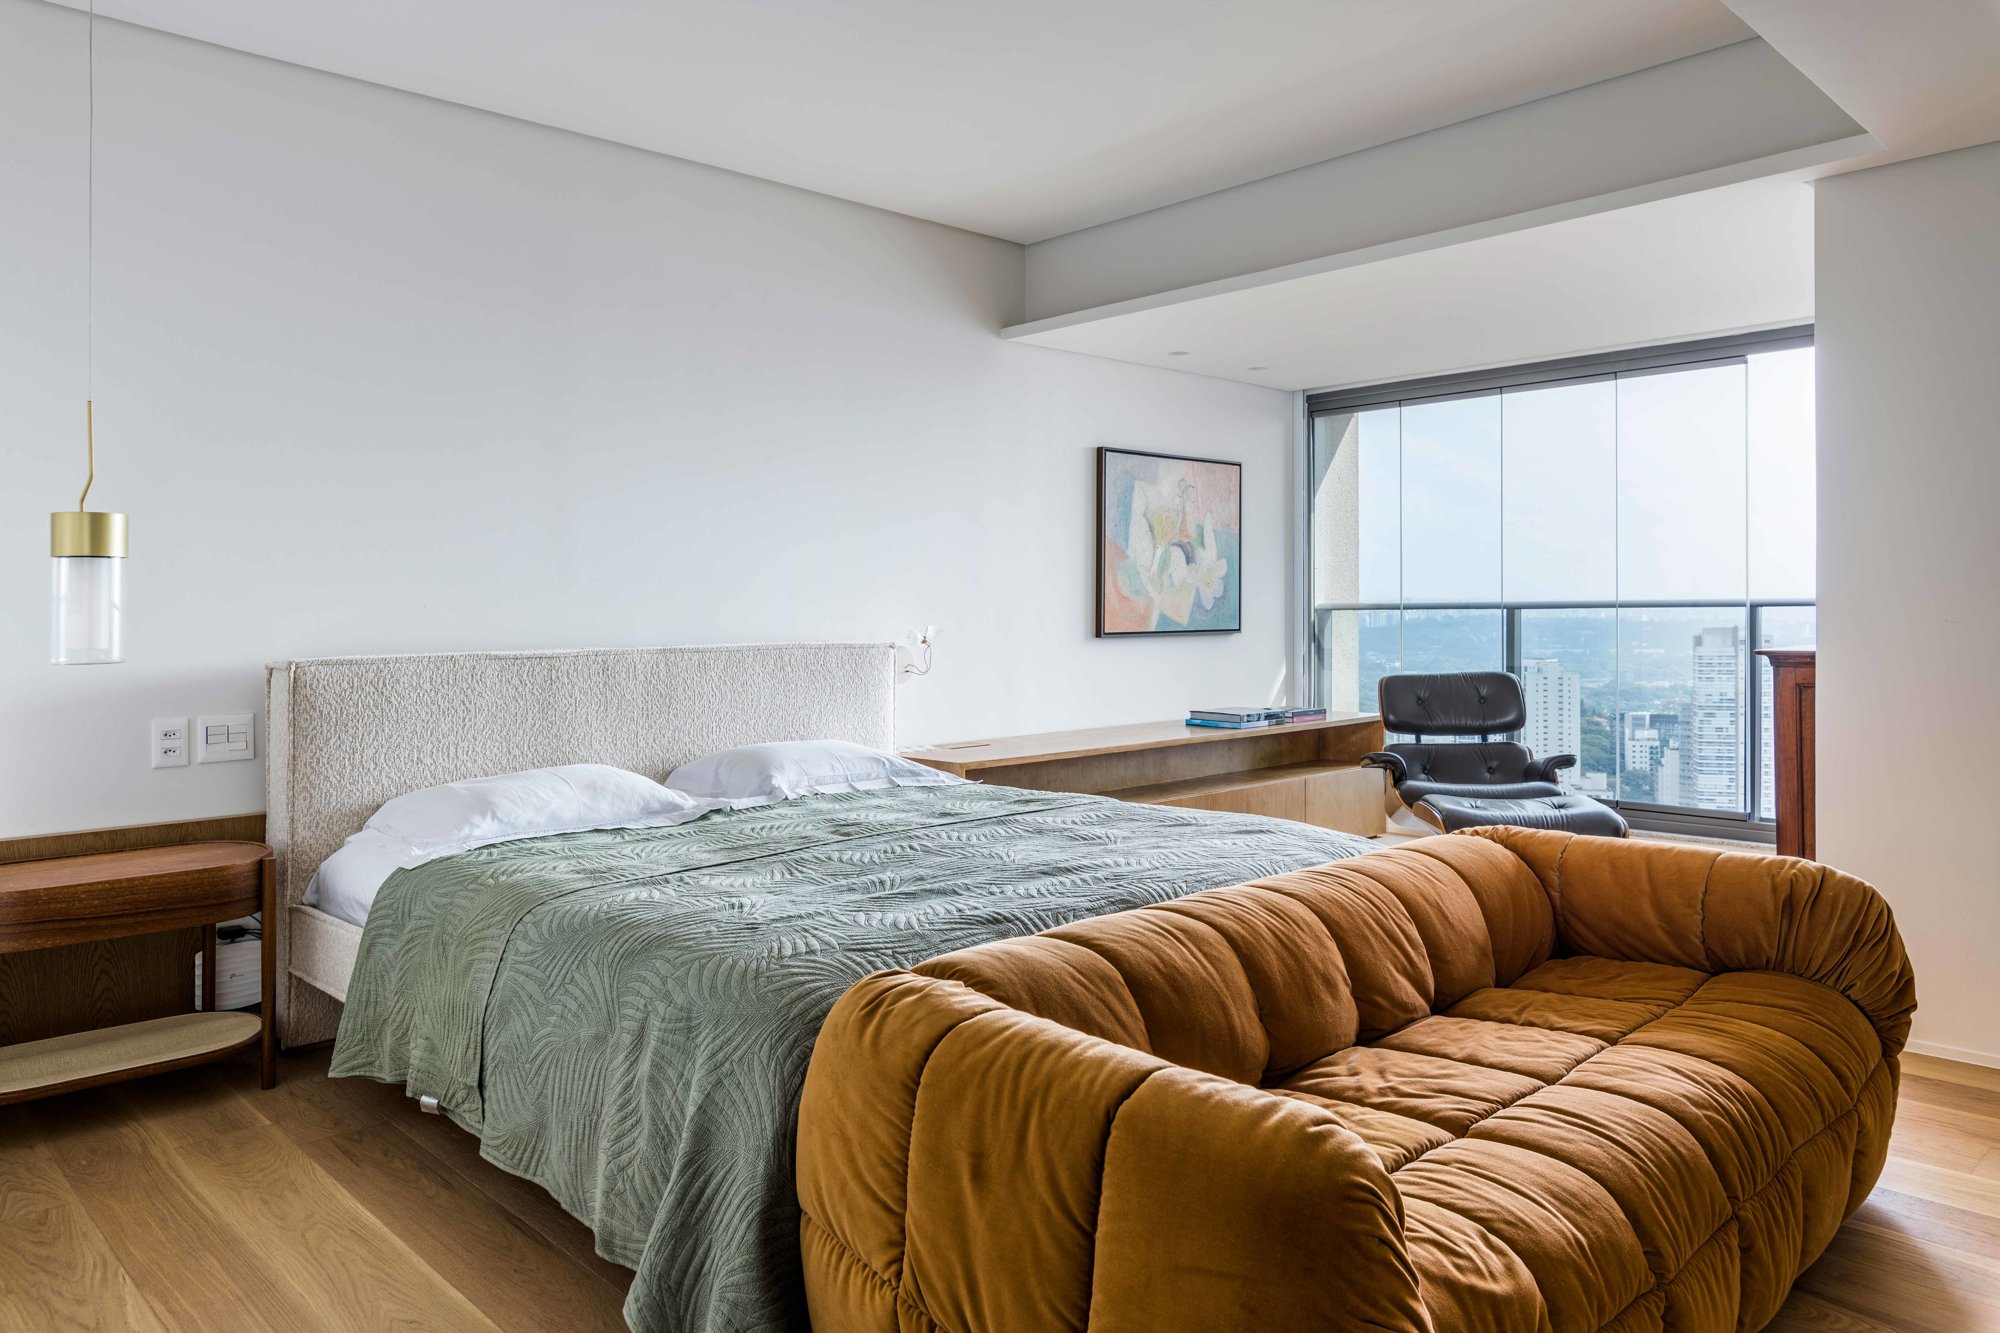 Dormitorio con madera y ventales con vistas